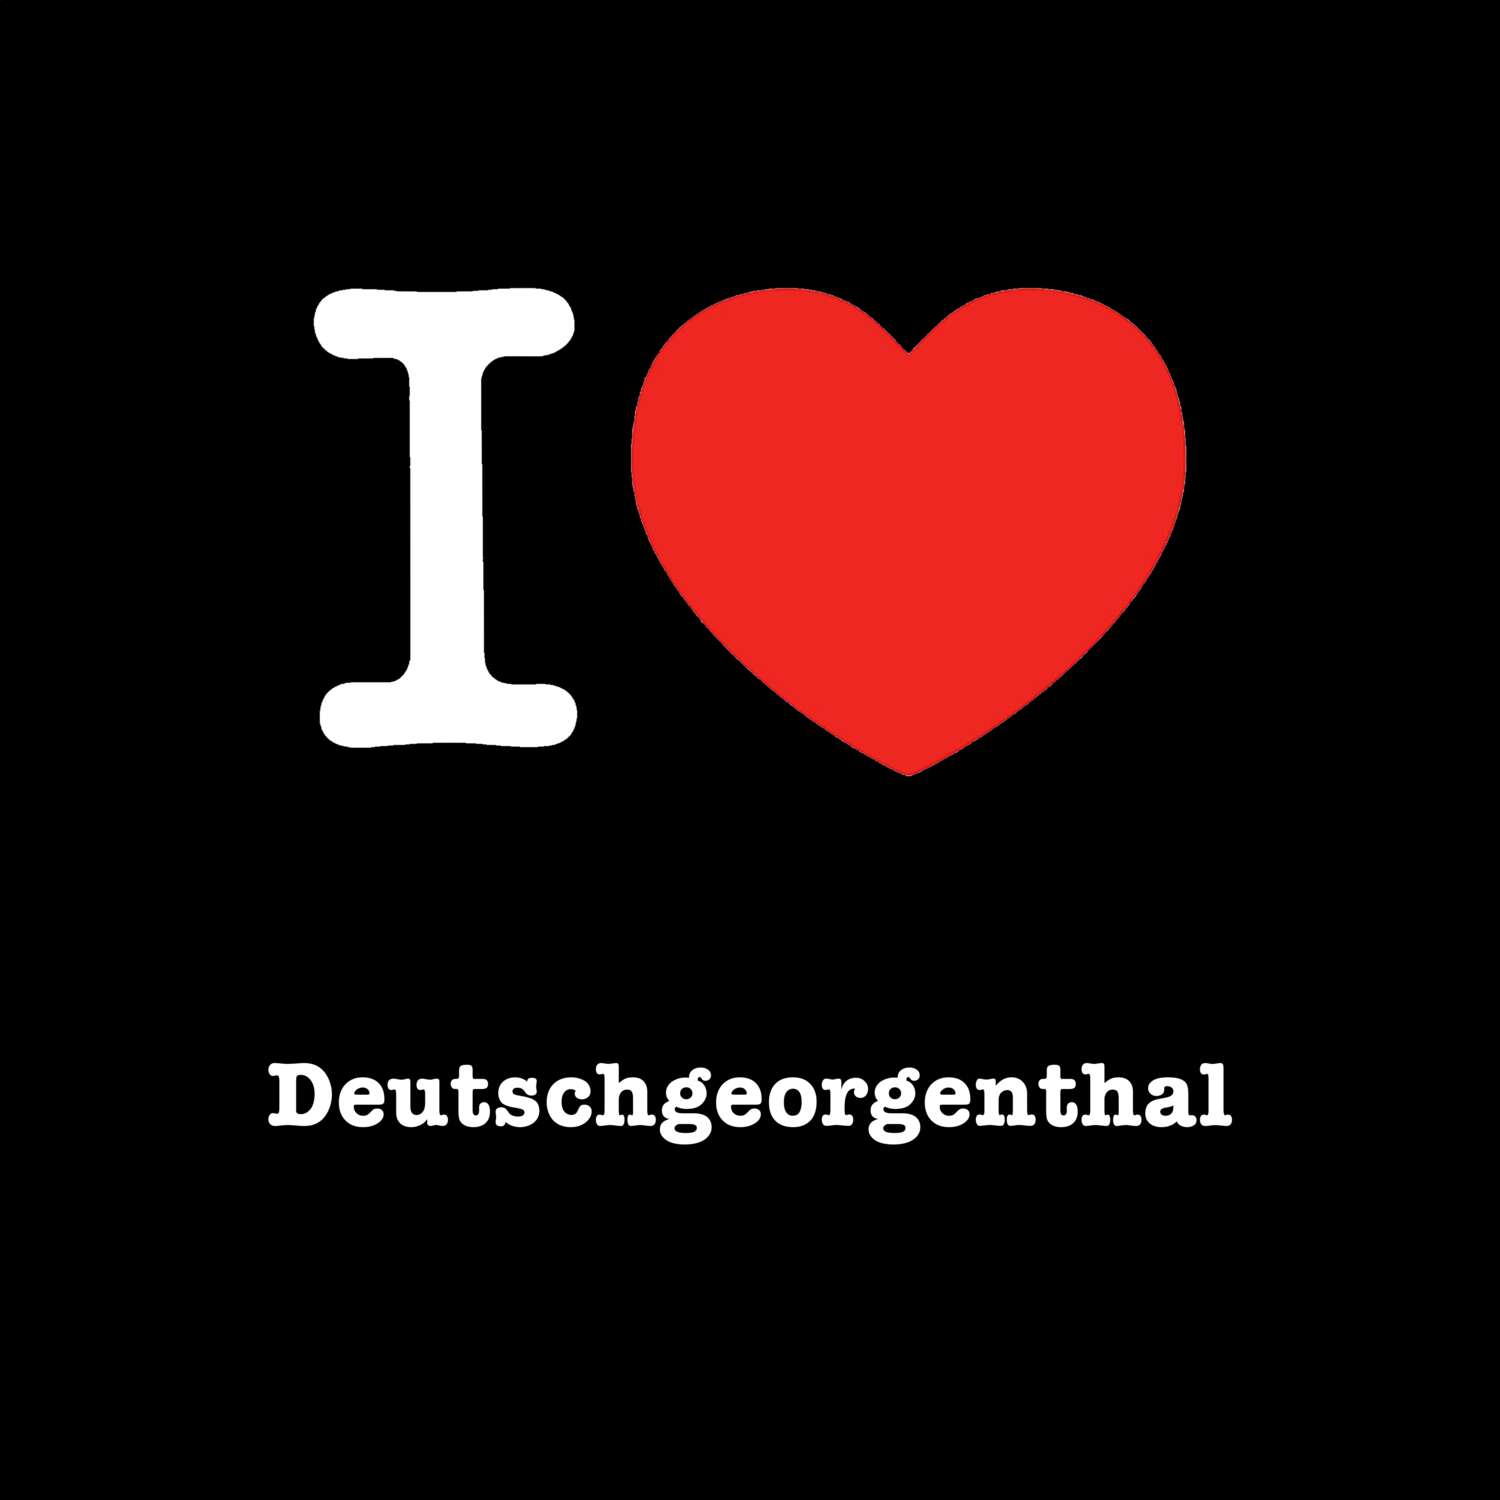 Deutschgeorgenthal T-Shirt »I love«